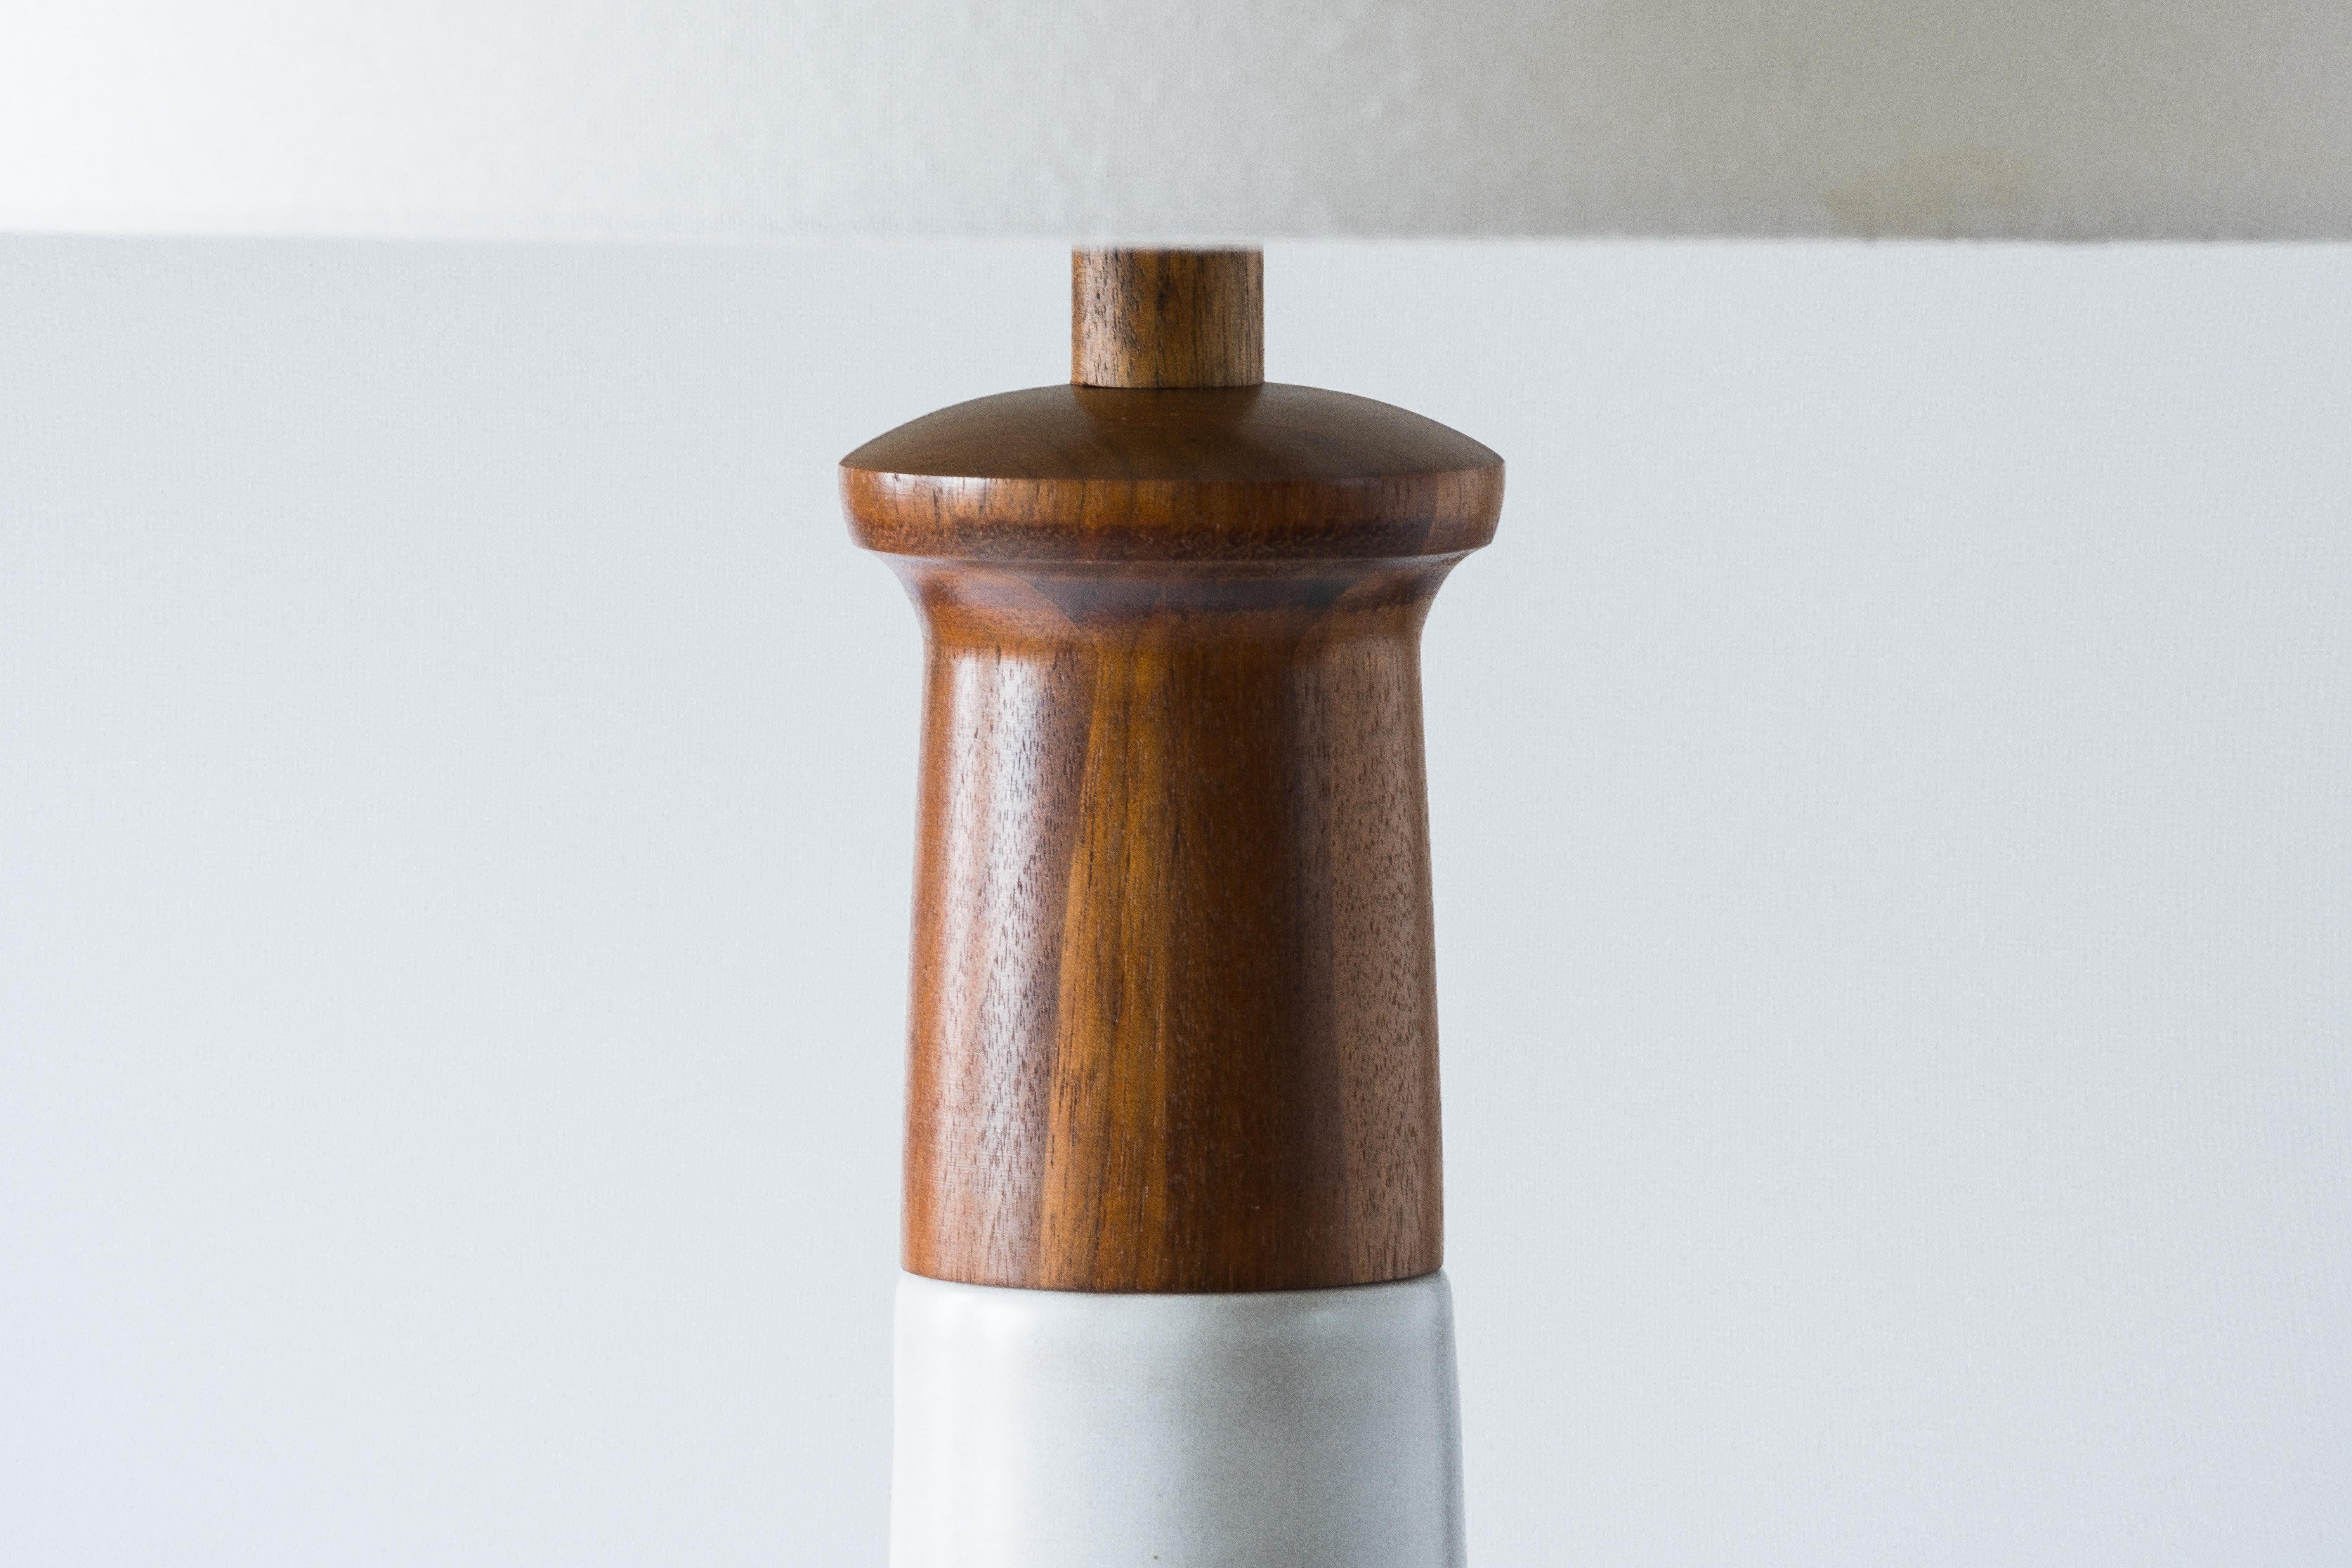 Glazed Martz / Marshall Studios Tall Ceramic Lamp, White Glaze with Walnut Accents